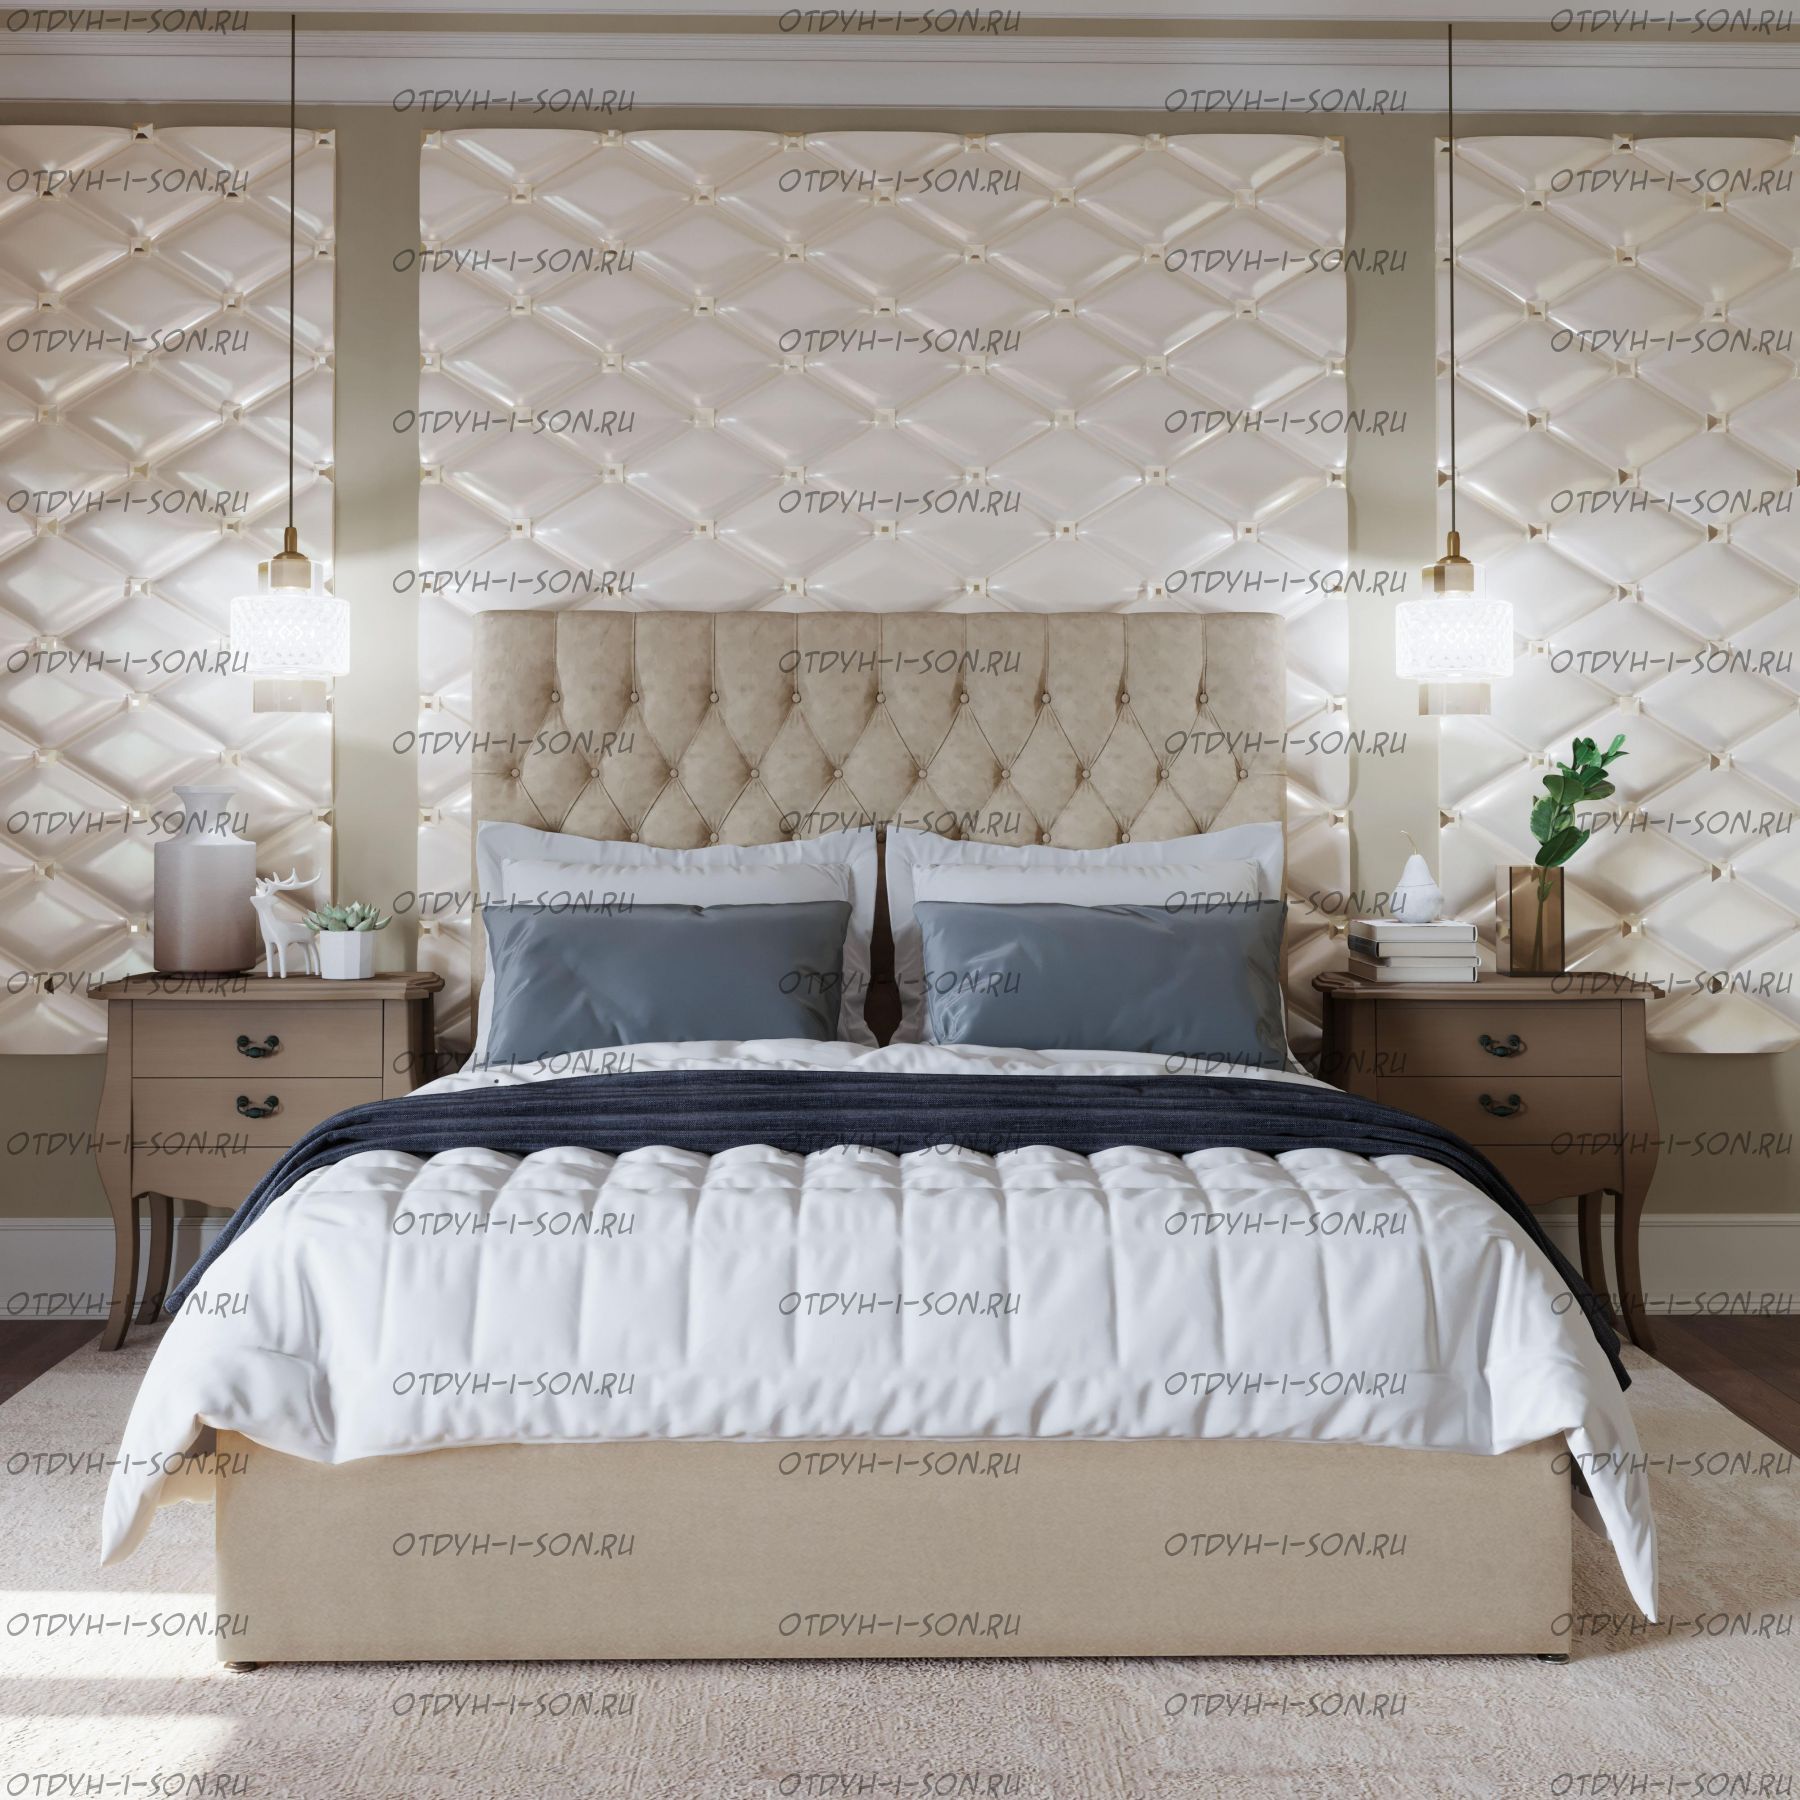 Кровати перрино - роскошная спальня по доступной цене. как выбрать кровать perrino